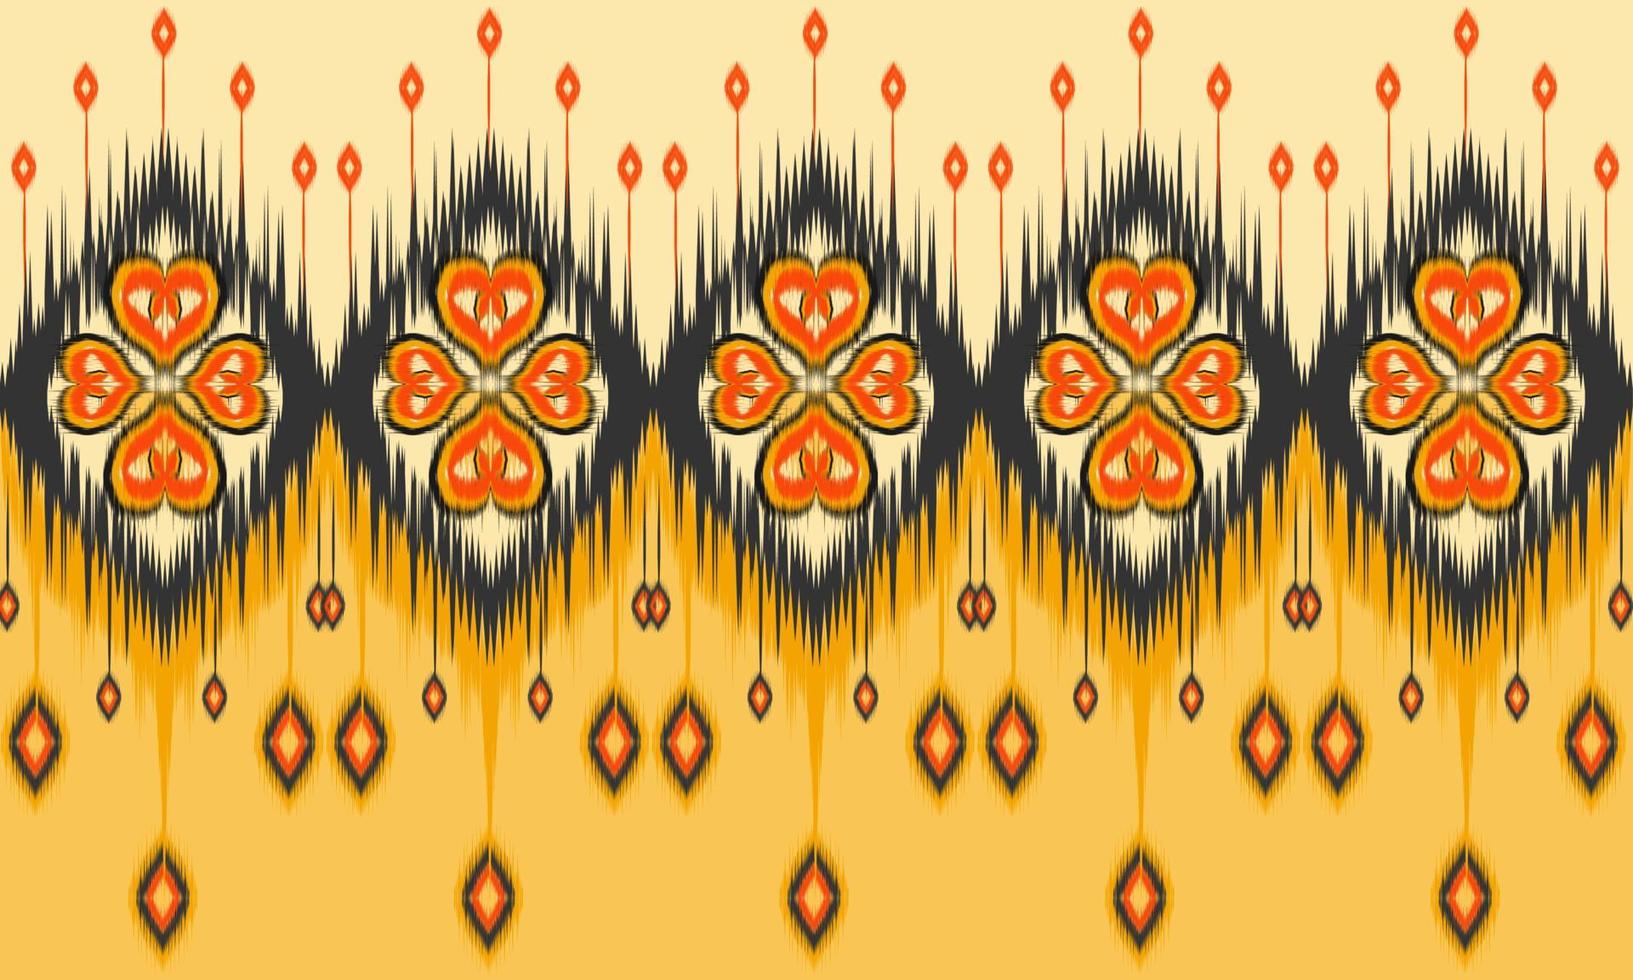 disegno tradizionale geometrico etnico orientale modello ikat per sfondo, moquette, carta da parati, abbigliamento, avvolgimento, batik, tessuto, illustrazione vettoriale. stile ricamo. vettore